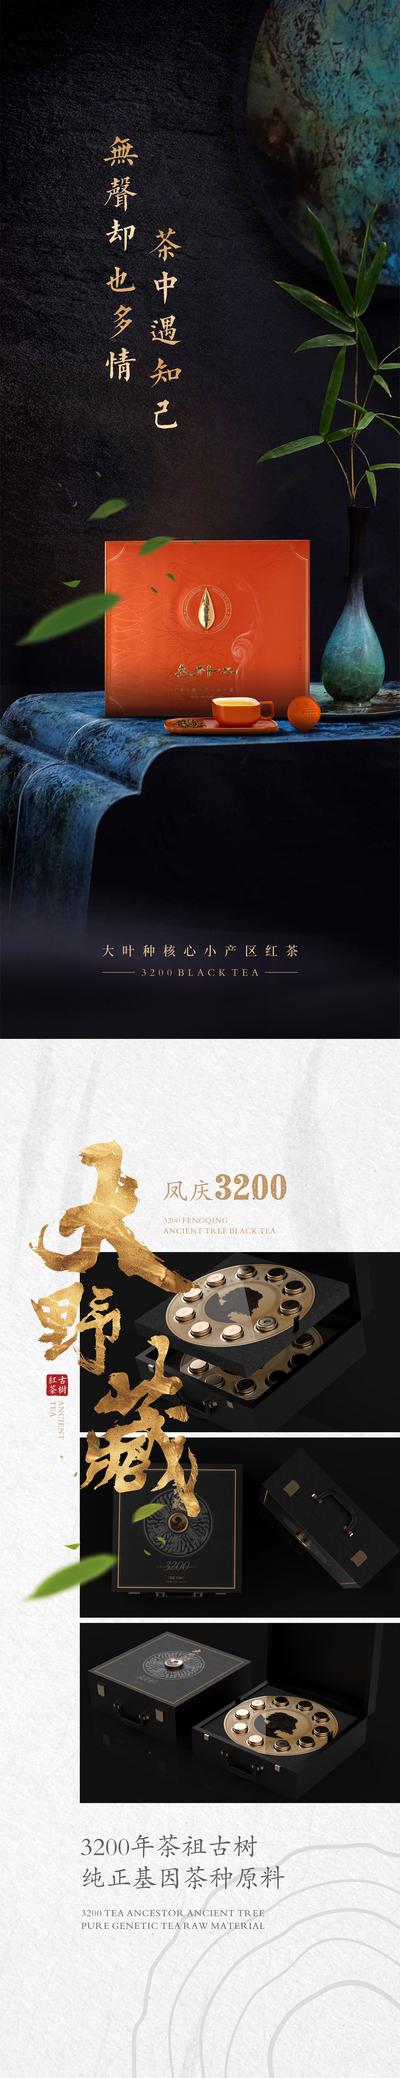 南门网 海报 长图 产品 红茶 古树 礼盒装 灯箱 禅意 中式